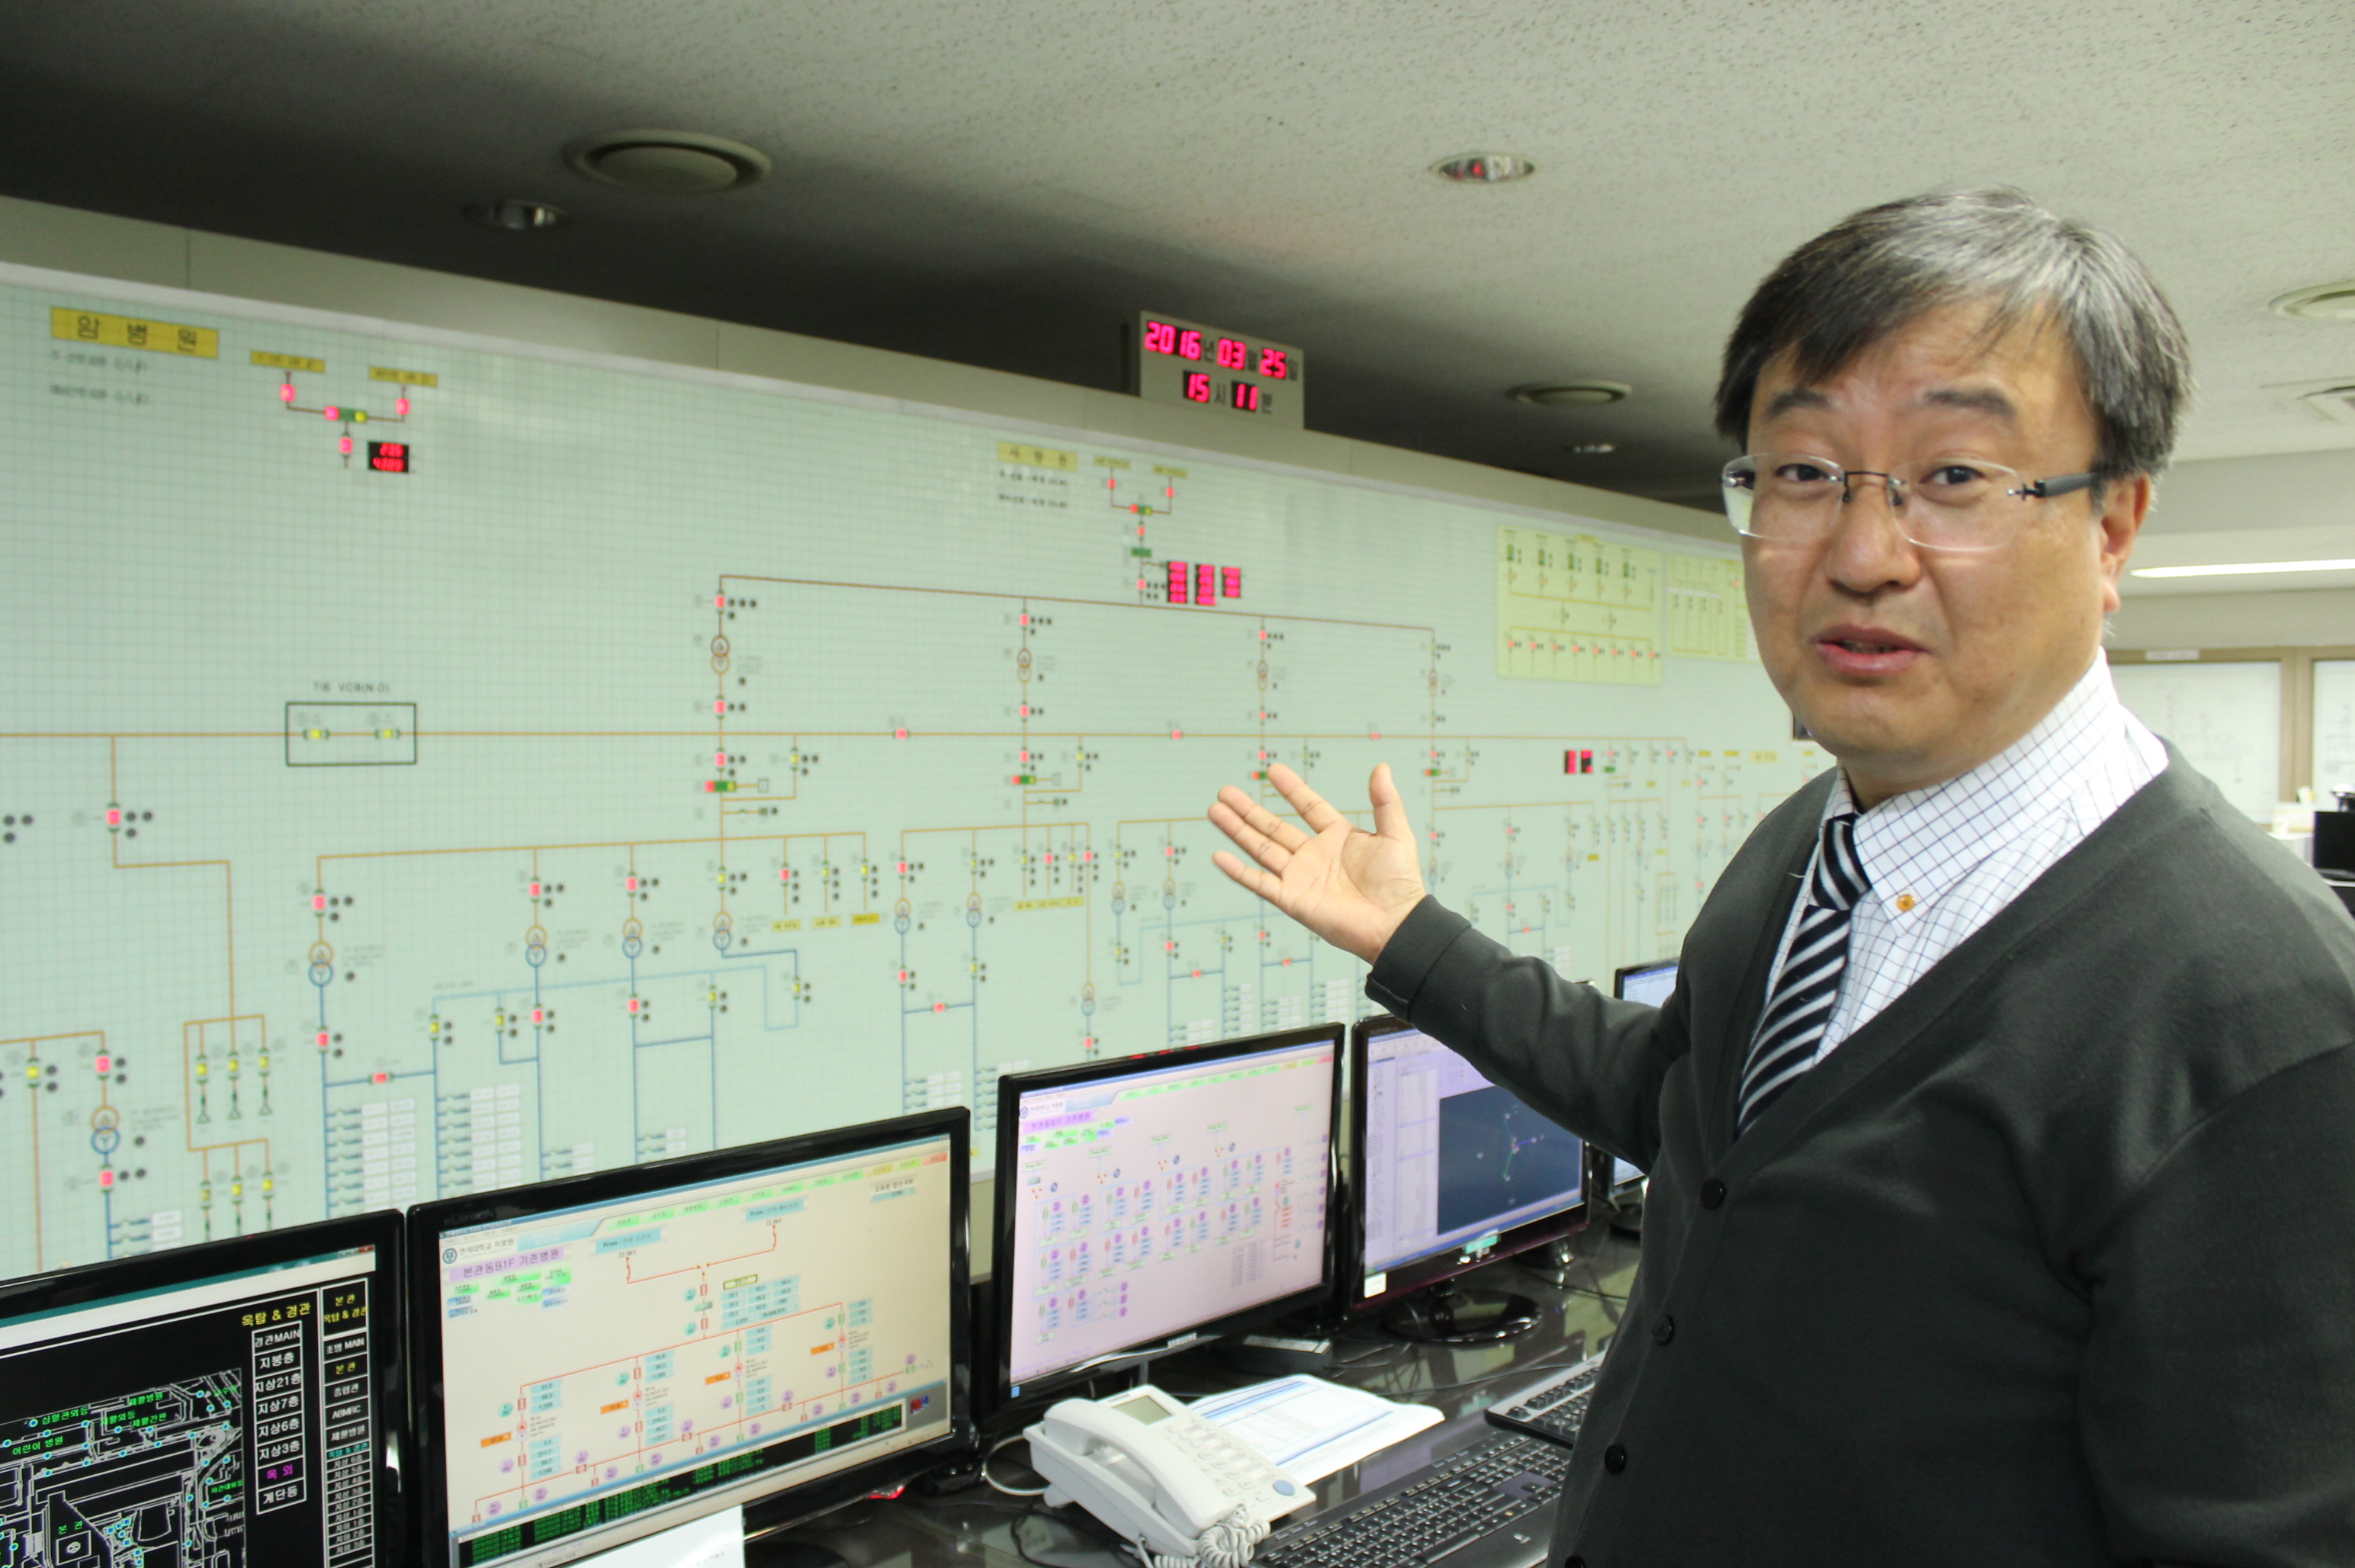 세브란스 병원 환경관리 파트장인 김도현 과장이 건물 전력 계통에 대해 설명하고 있다. 